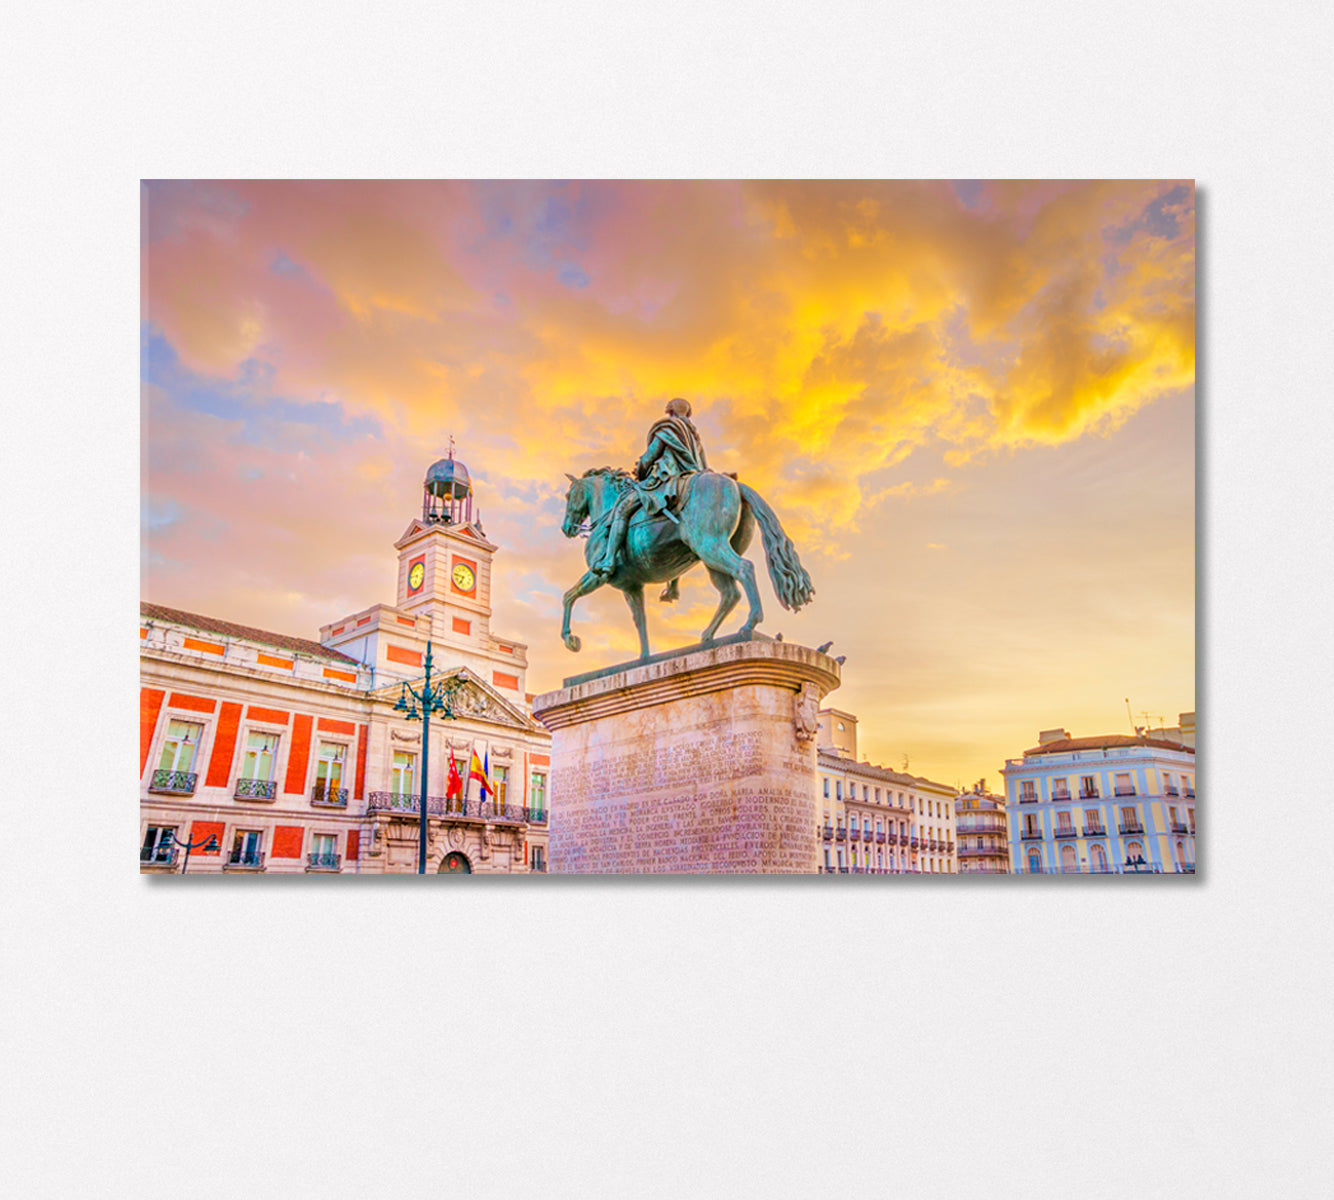 Puerta Del Sol Madrid Spain Canvas Print-Canvas Print-CetArt-1 Panel-24x16 inches-CetArt